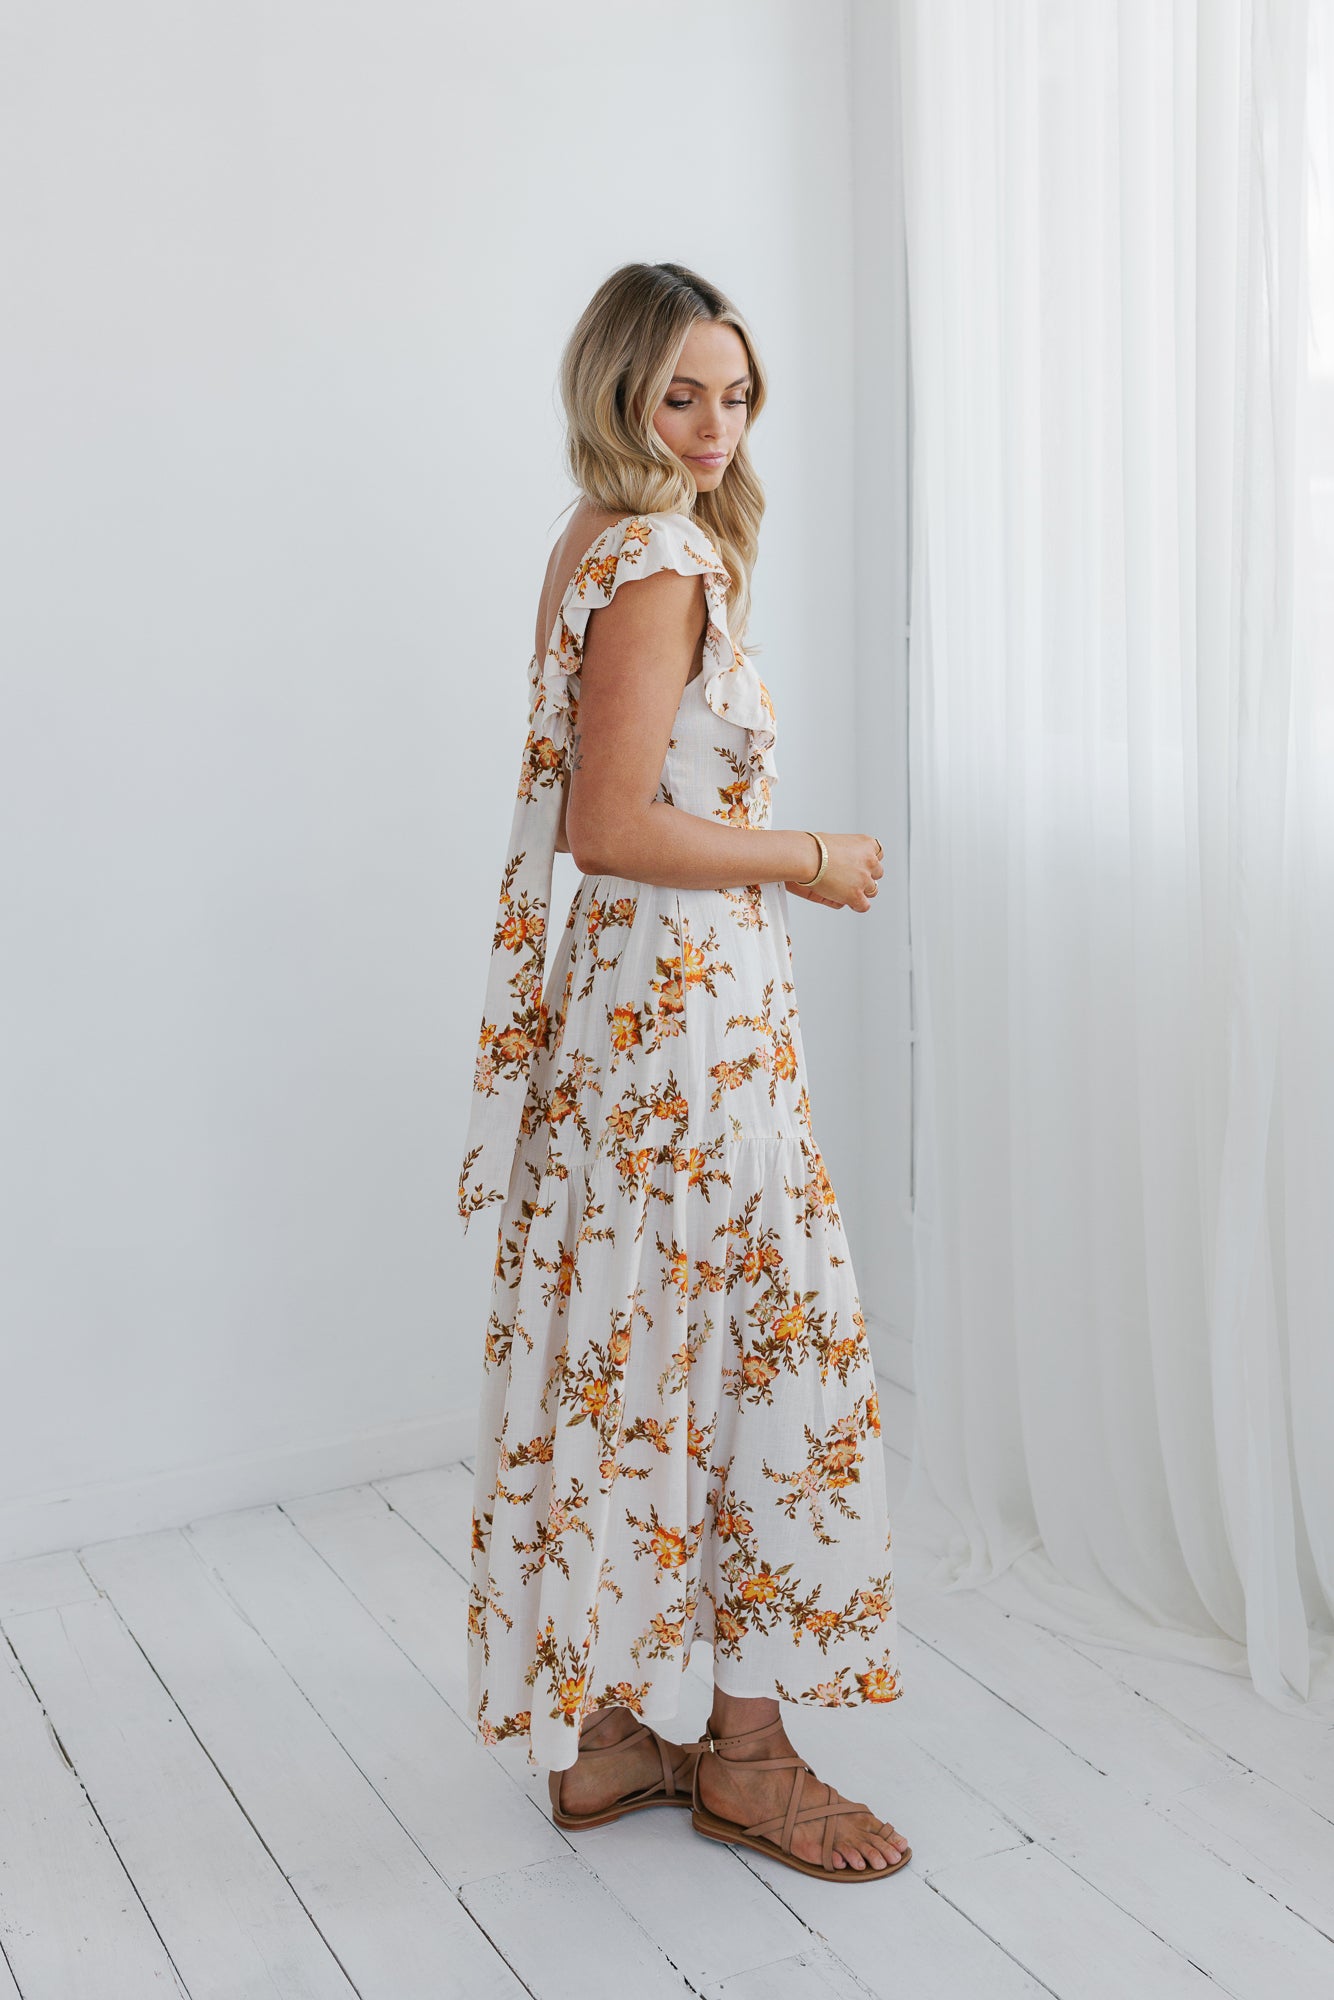 Evvai Dress - Cream/Peach Floral